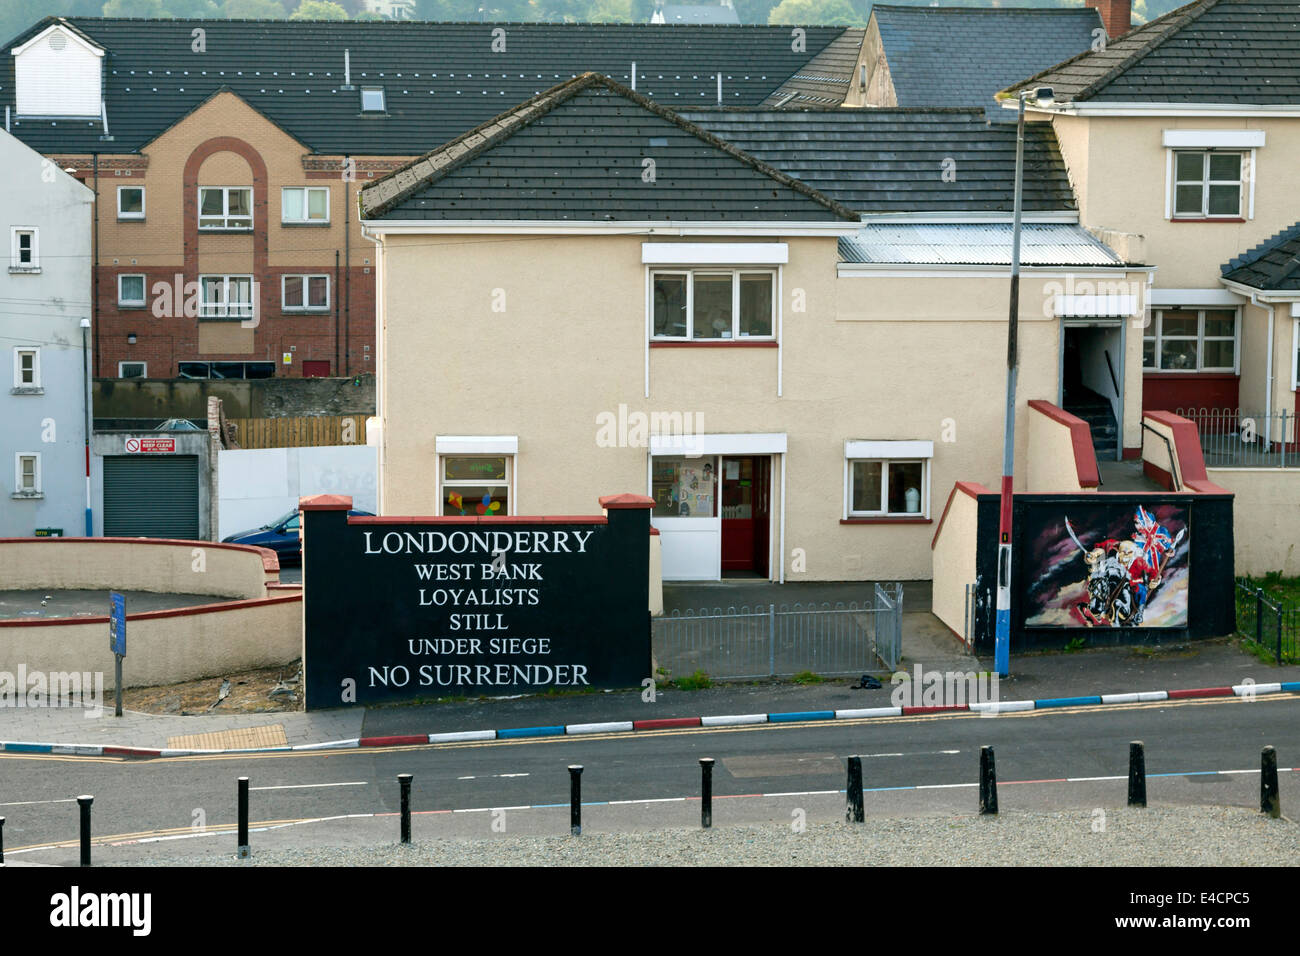 Lealisti murale in Londonderry, Irlanda del Nord, Regno Unito: West Bank - Loyalists-Still sotto assedio- No arrendersi. Foto Stock